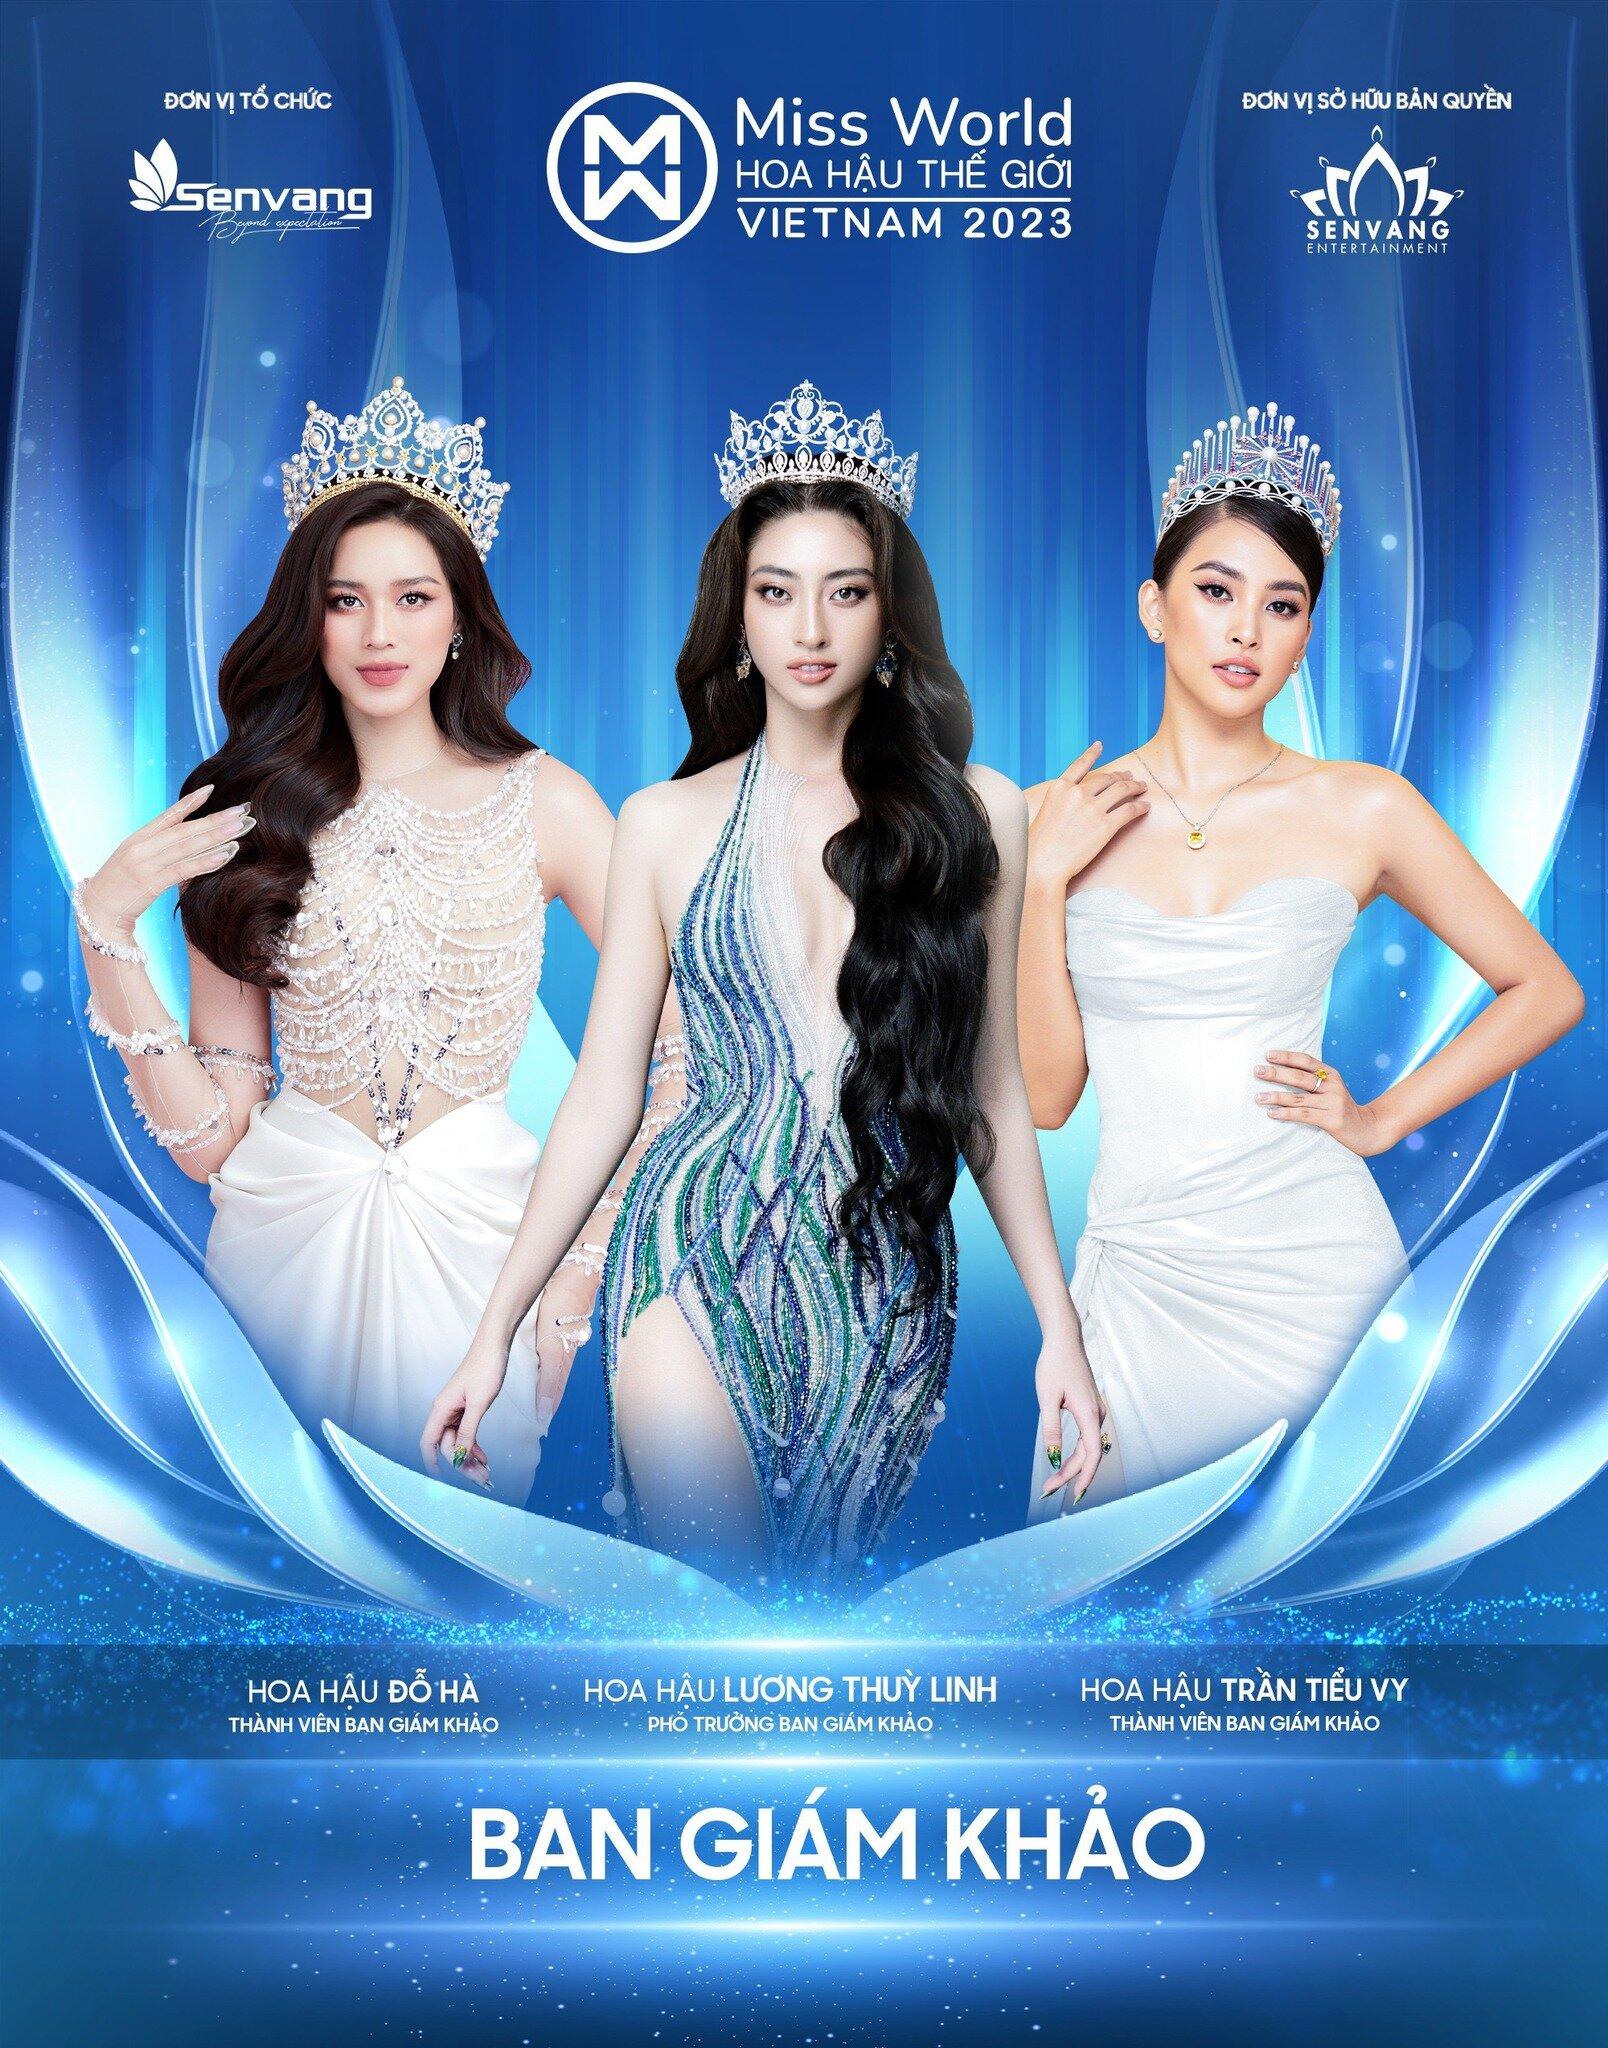 Đỗ Hà, Lương Thùy Linh và Tiểu Vy xác nhận là thành viên ban giám khảo Hoa hậu Thế giới Việt Nam 2023 (Ảnh: Fanpage Miss World Vietnam)